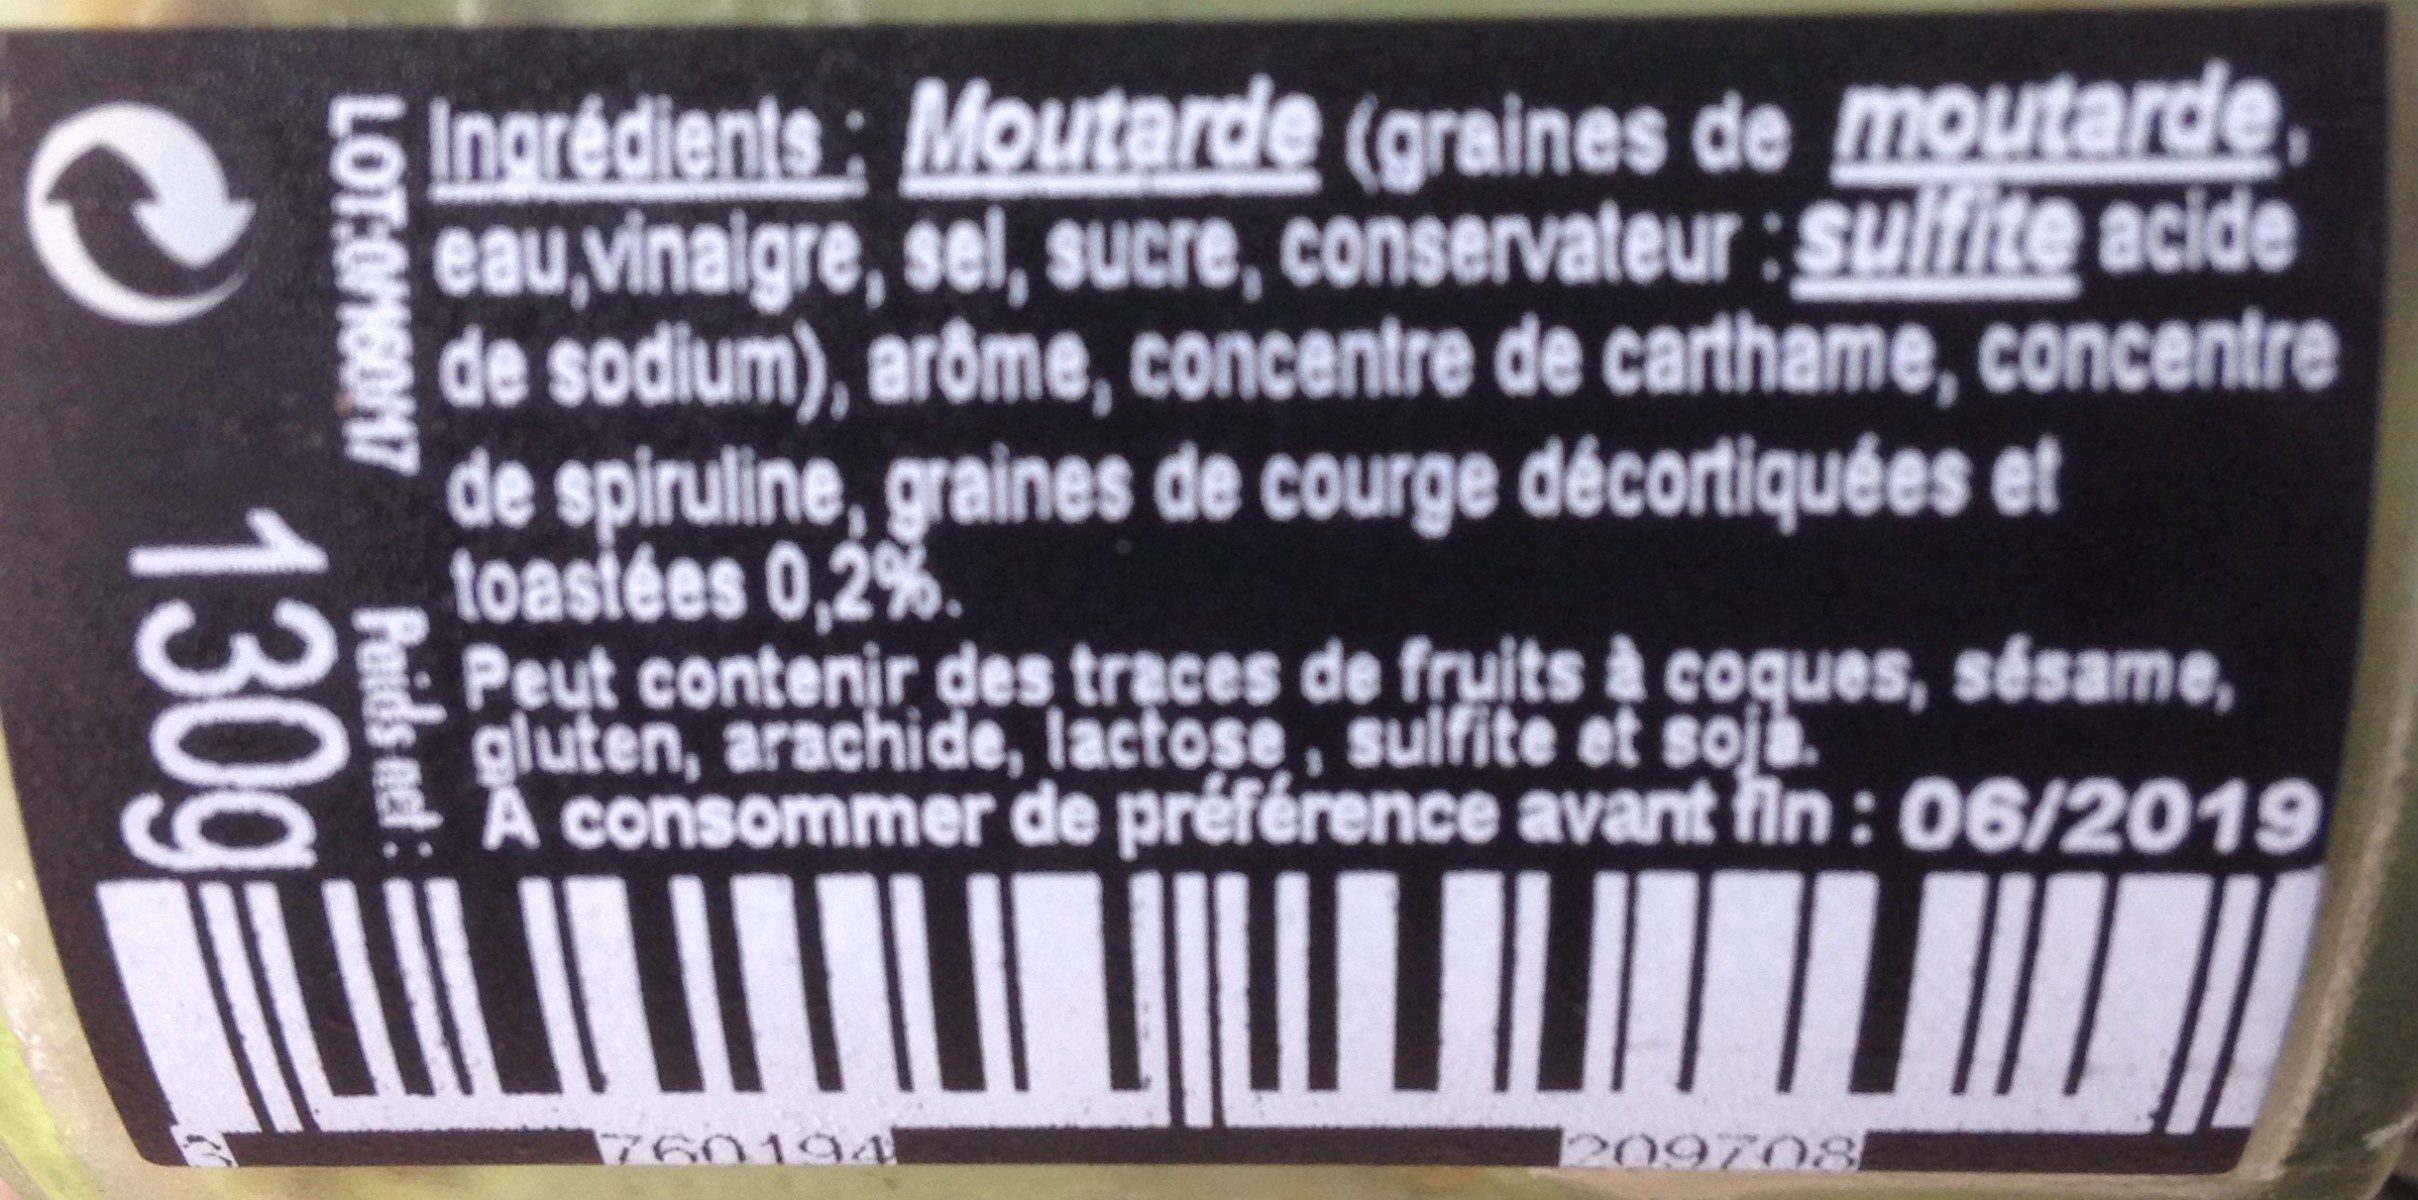 Moutarde pistache et graines de courges toastées - Ingredients - fr